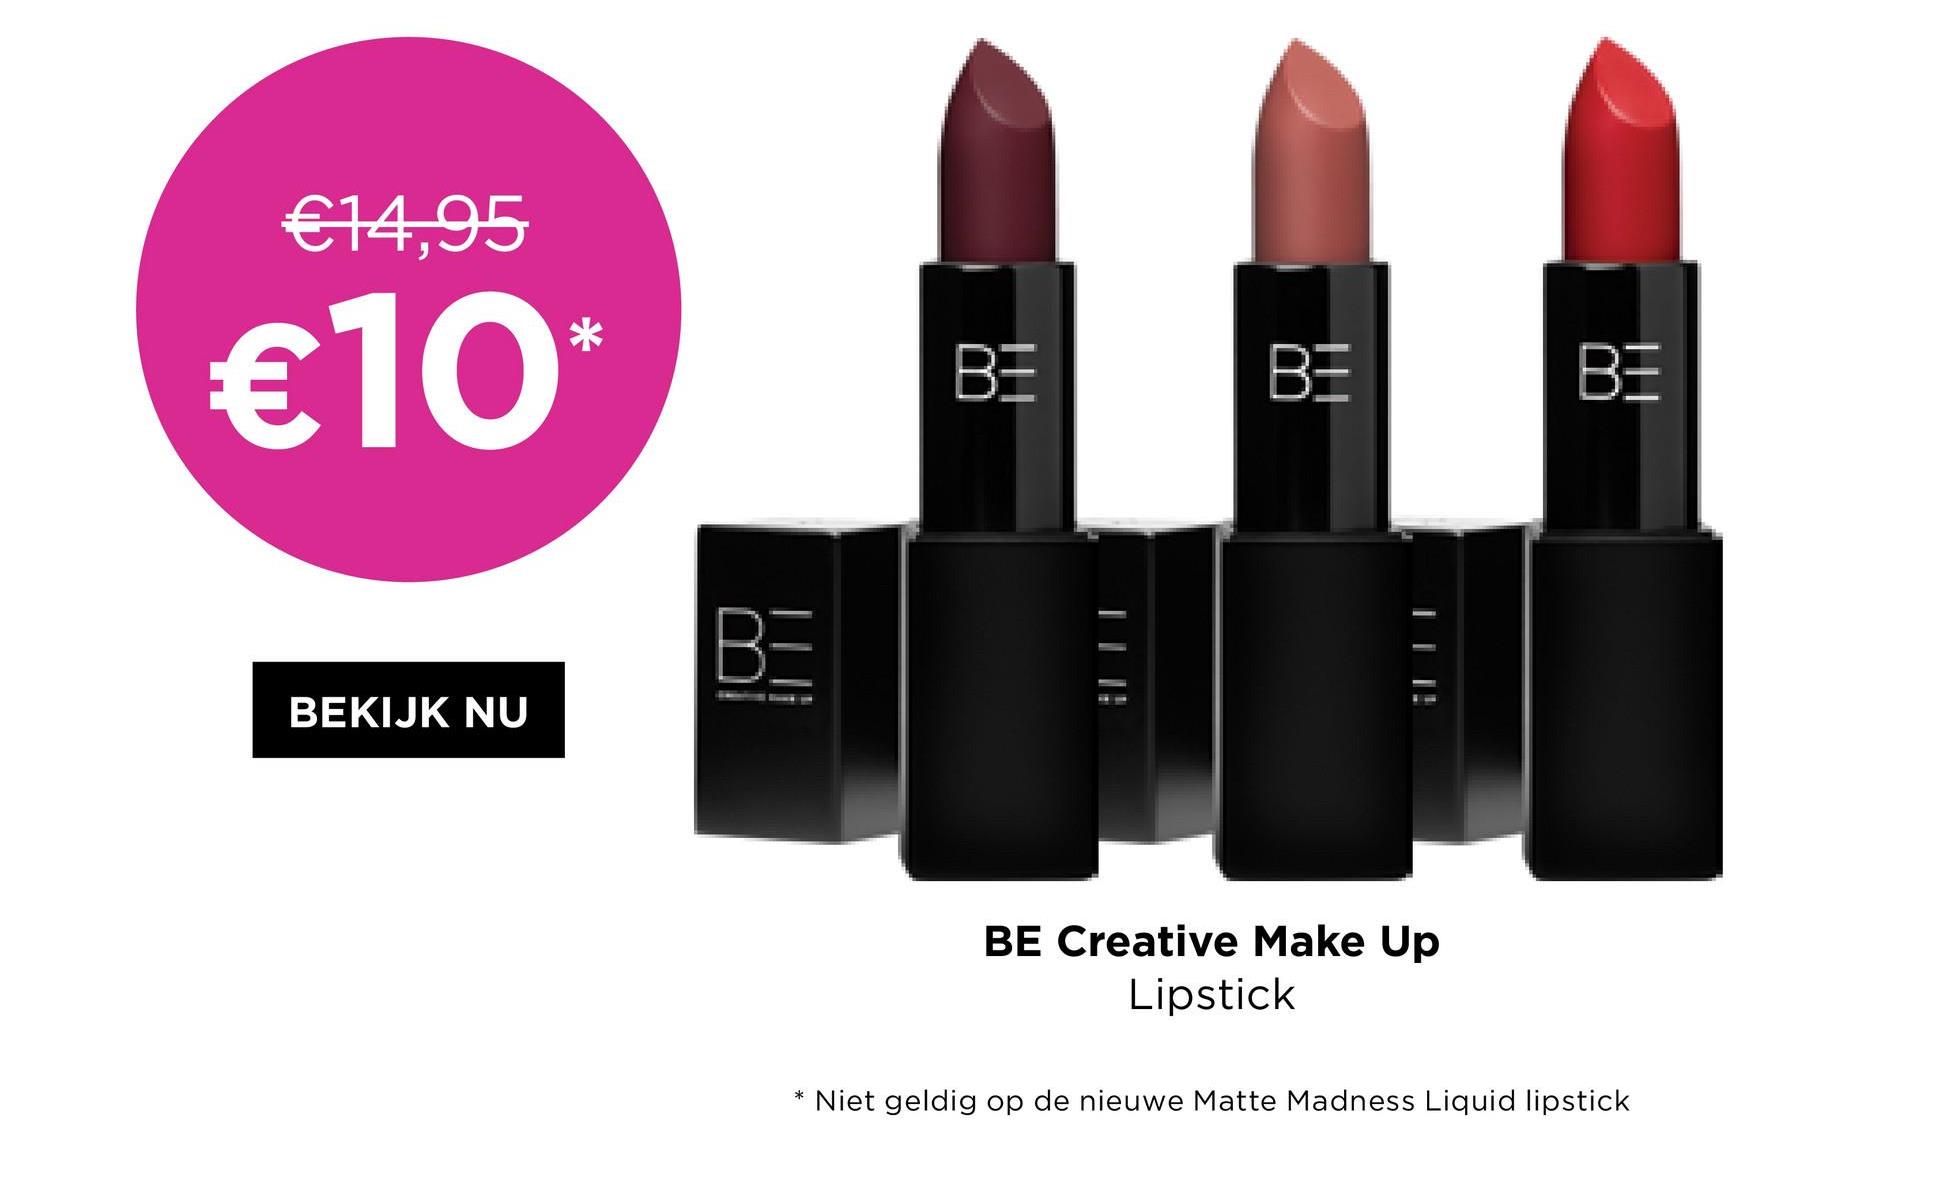 €14,95
€10*
BEKIJK NU
BE
BE
BE
AM
BE Creative Make Up
Lipstick
*
Niet geldig op de nieuwe Matte Madness Liquid lipstick
BE